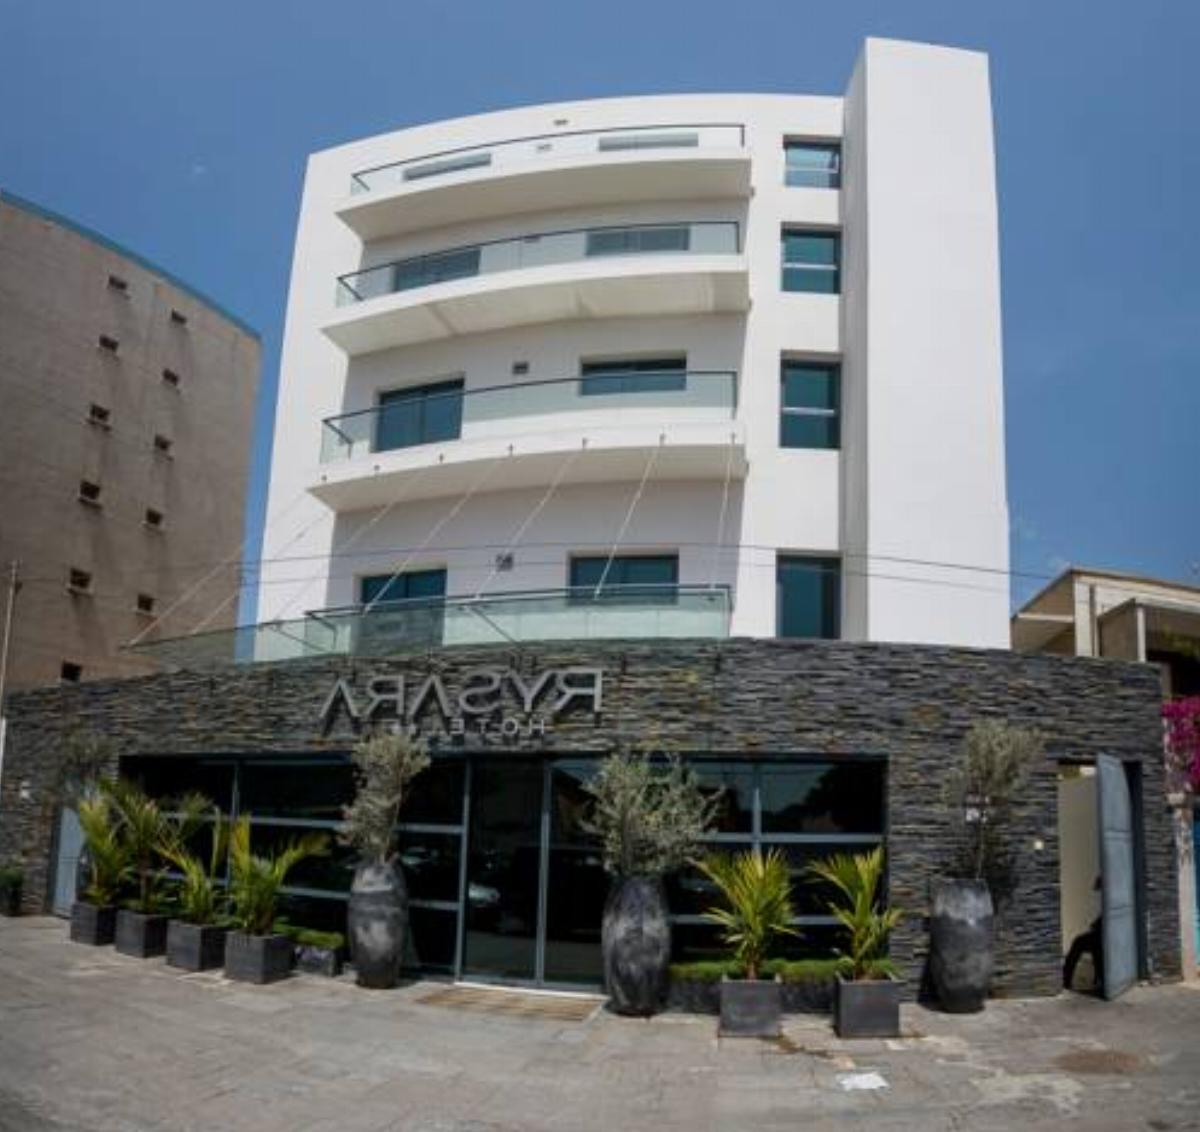 Rysara Hotel Hotel Dakar Senegal